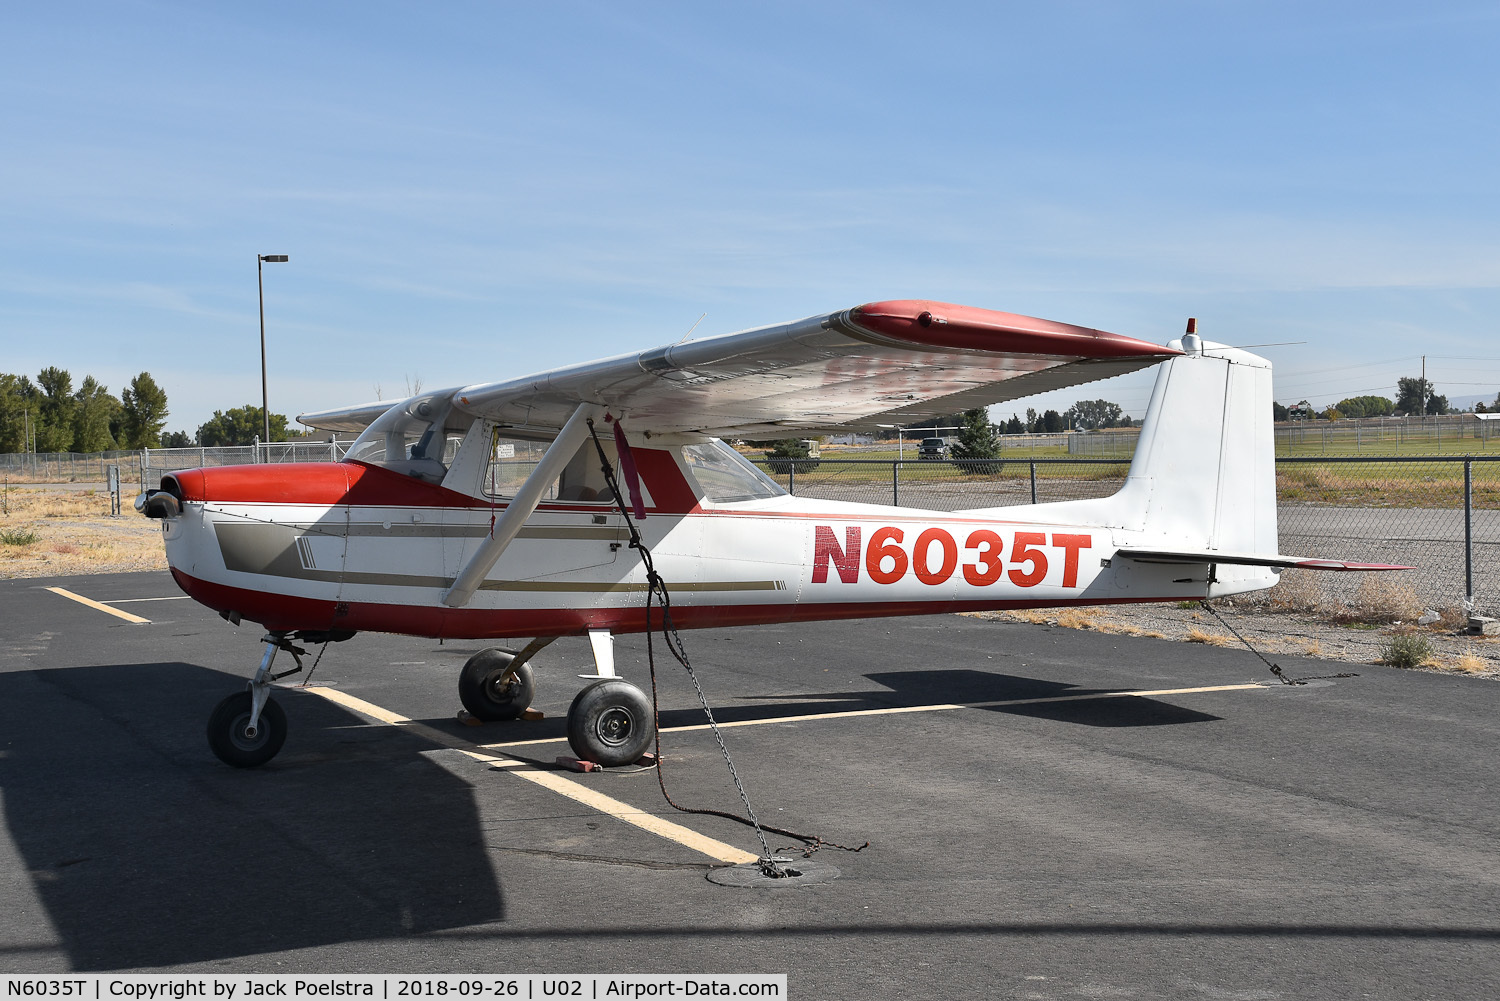 N6035T, 1964 Cessna 150D C/N 15060735, N6035T at Mc Carley Fld Airport, Blackfoot ID